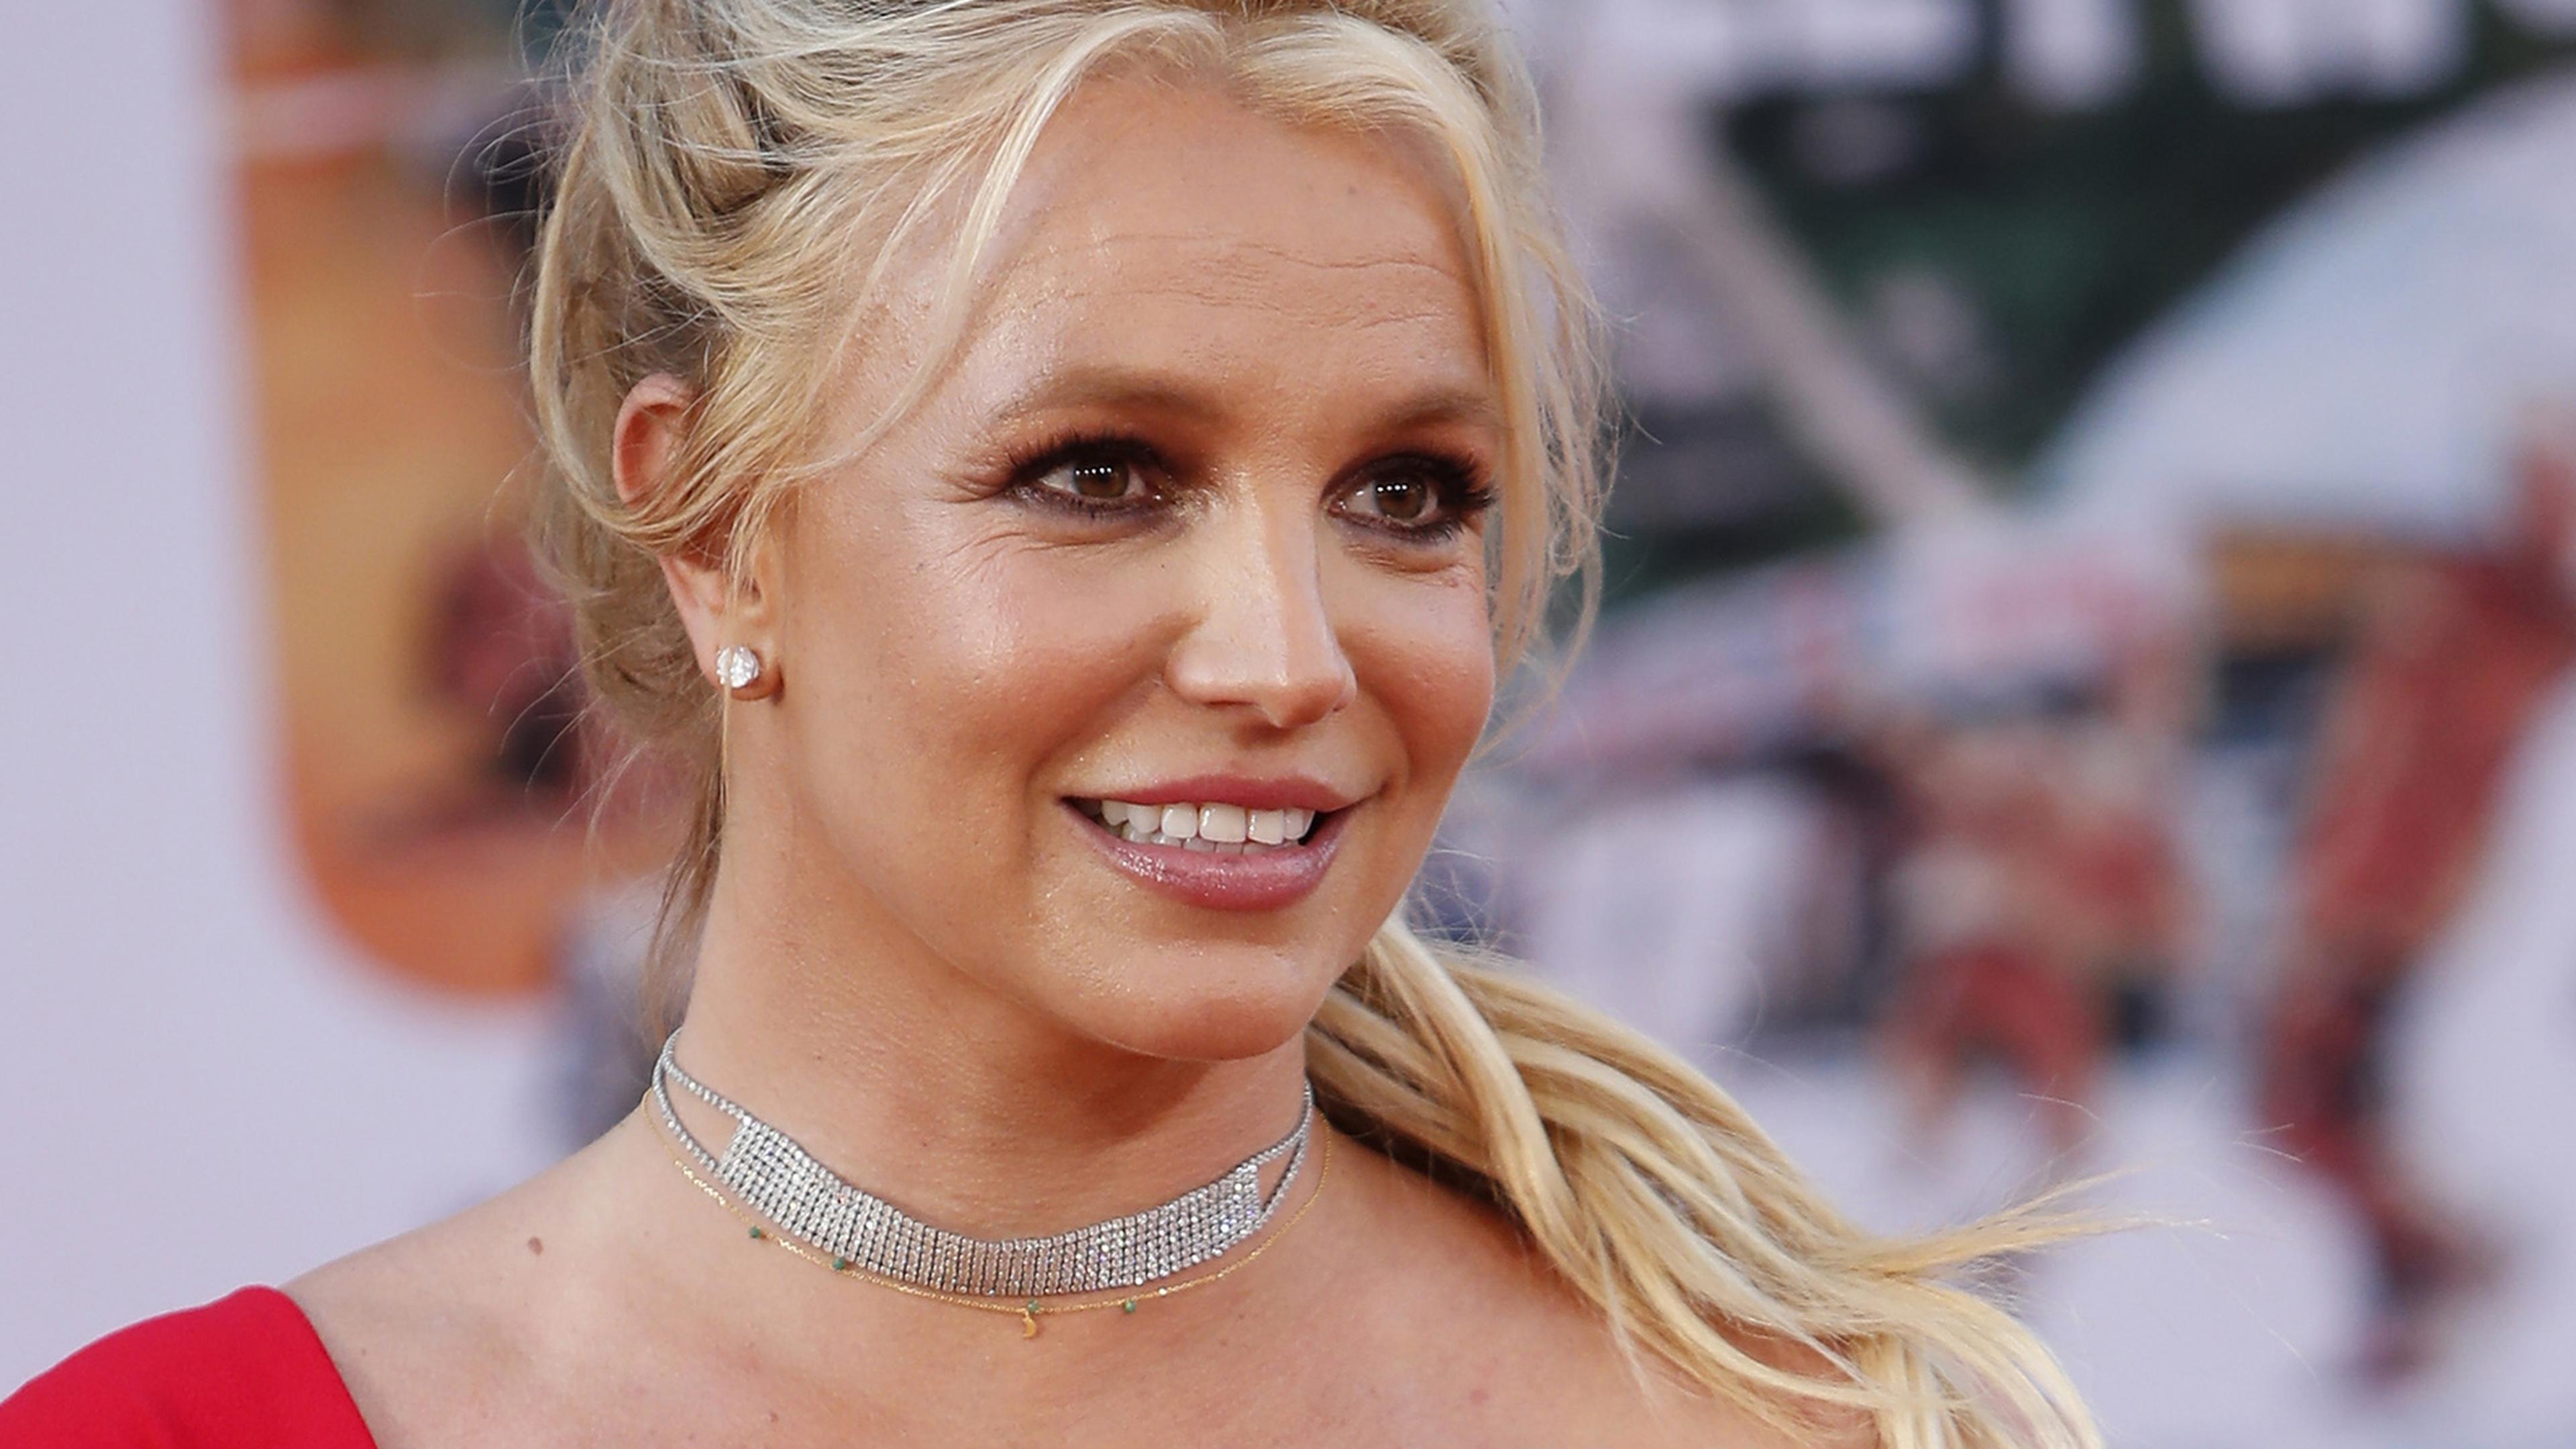 2008 hatte ihr Vater die Vormundschaft über Britney Spears übernommen, nachdem diese wegen privater und beruflicher Probleme psychisch zusammengebrochen war.